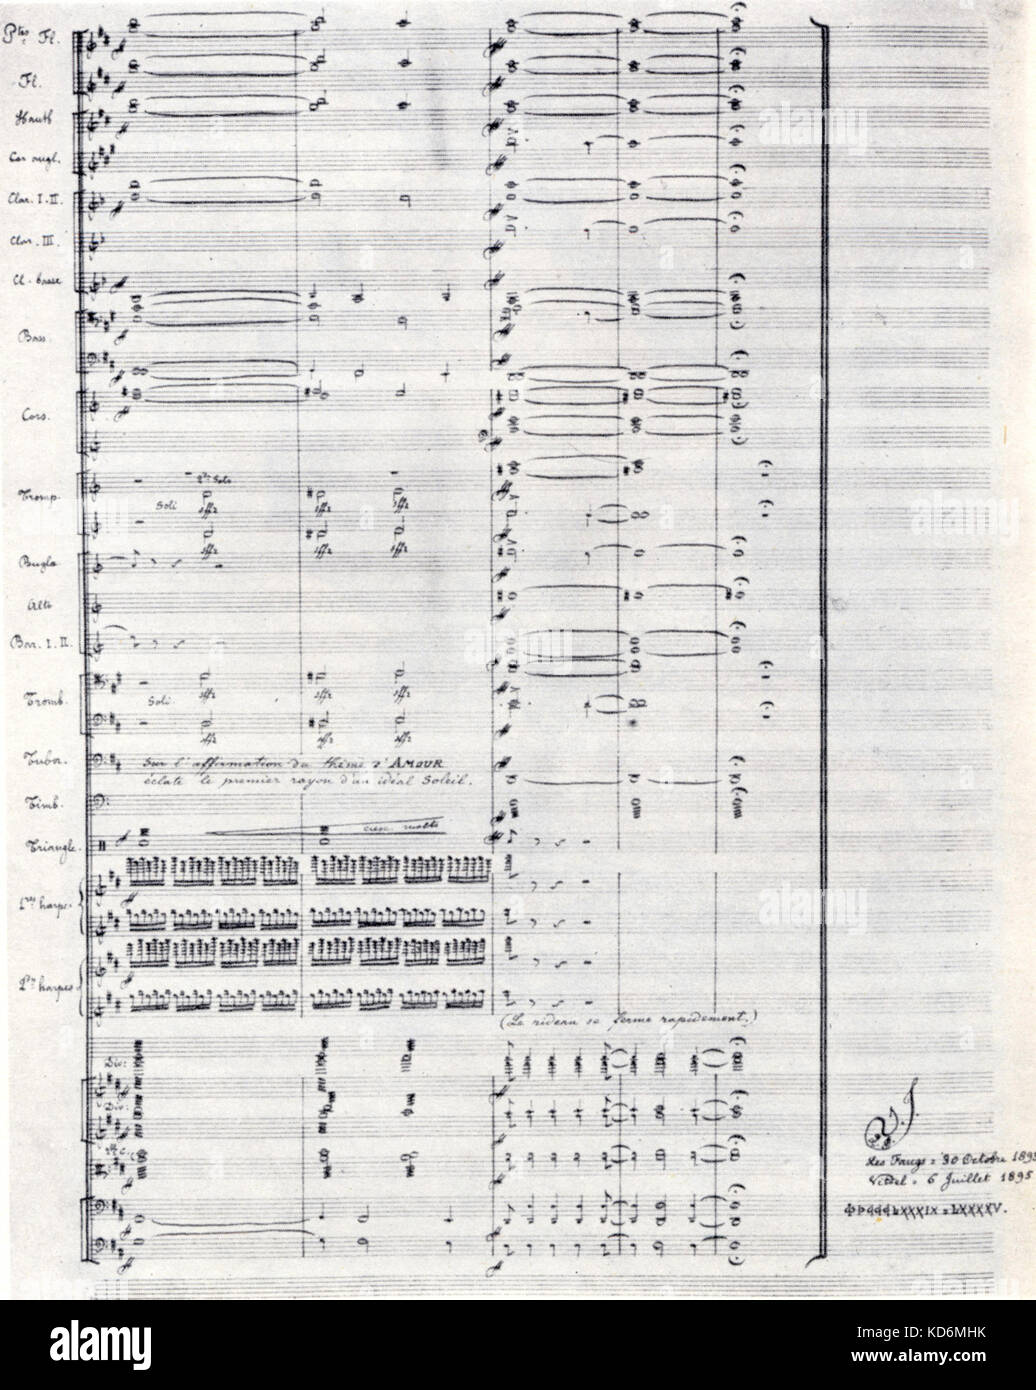 Vincent d'Indy letzte Seite seiner handschriftlichen Partitur für fervaal. Der französische Komponist vom 27. März 1851 - vom 2. Dezember 1931. Stockfoto